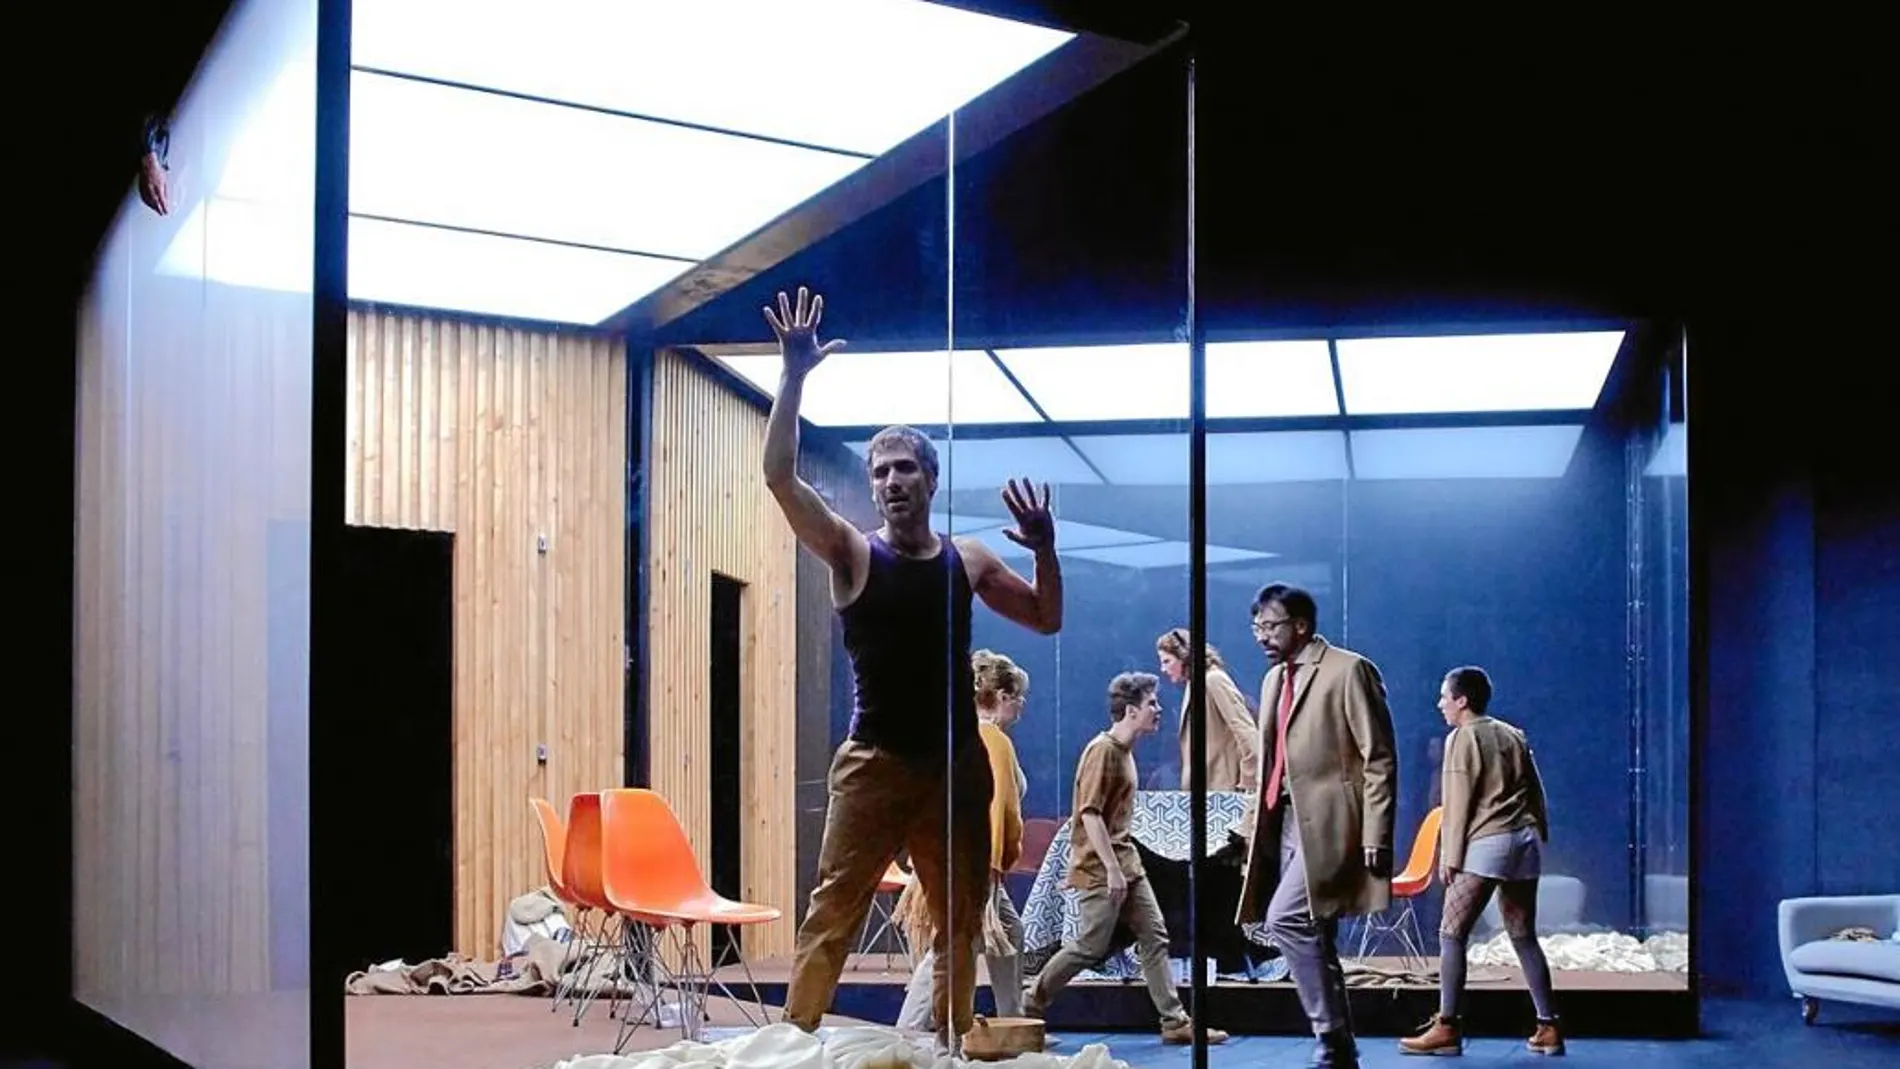 El reparto, encabezado por Raúl Prieto (en primer plano) e Israel Elejalde (con gabardina), se moverá en un cubo que hace de refugio y cárcel al mismo tiempo